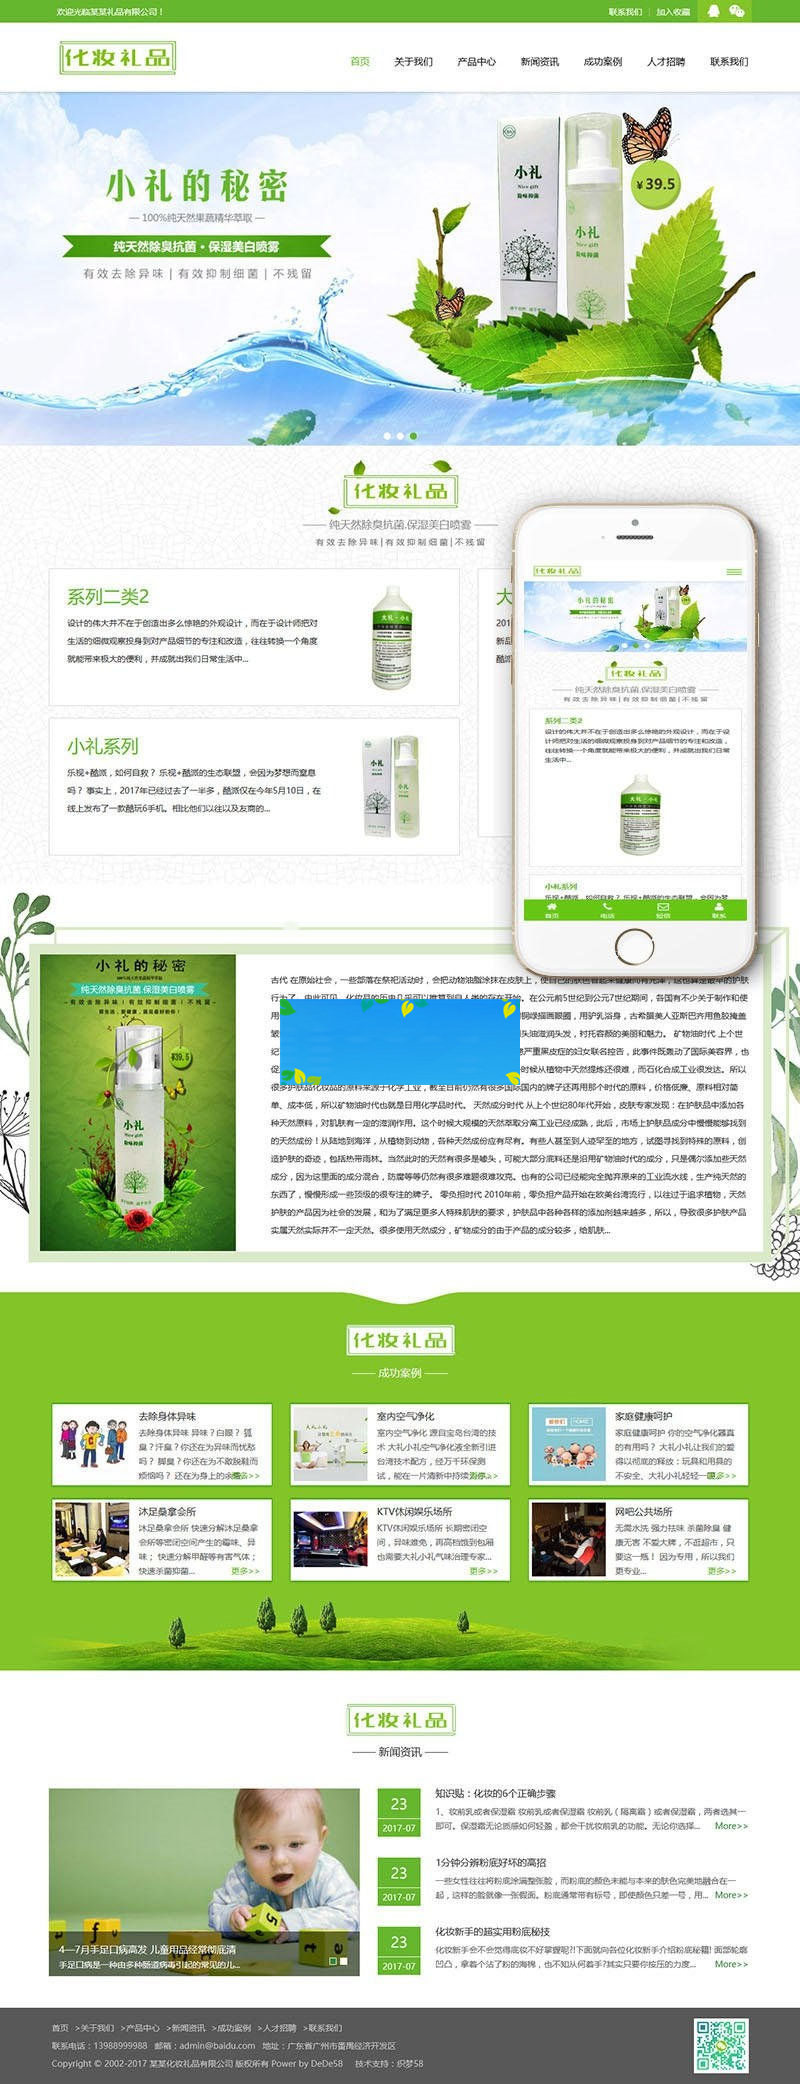 织梦dedecms响应式绿色美容护肤化妆礼品公司网站模板(自适应手机移动端)